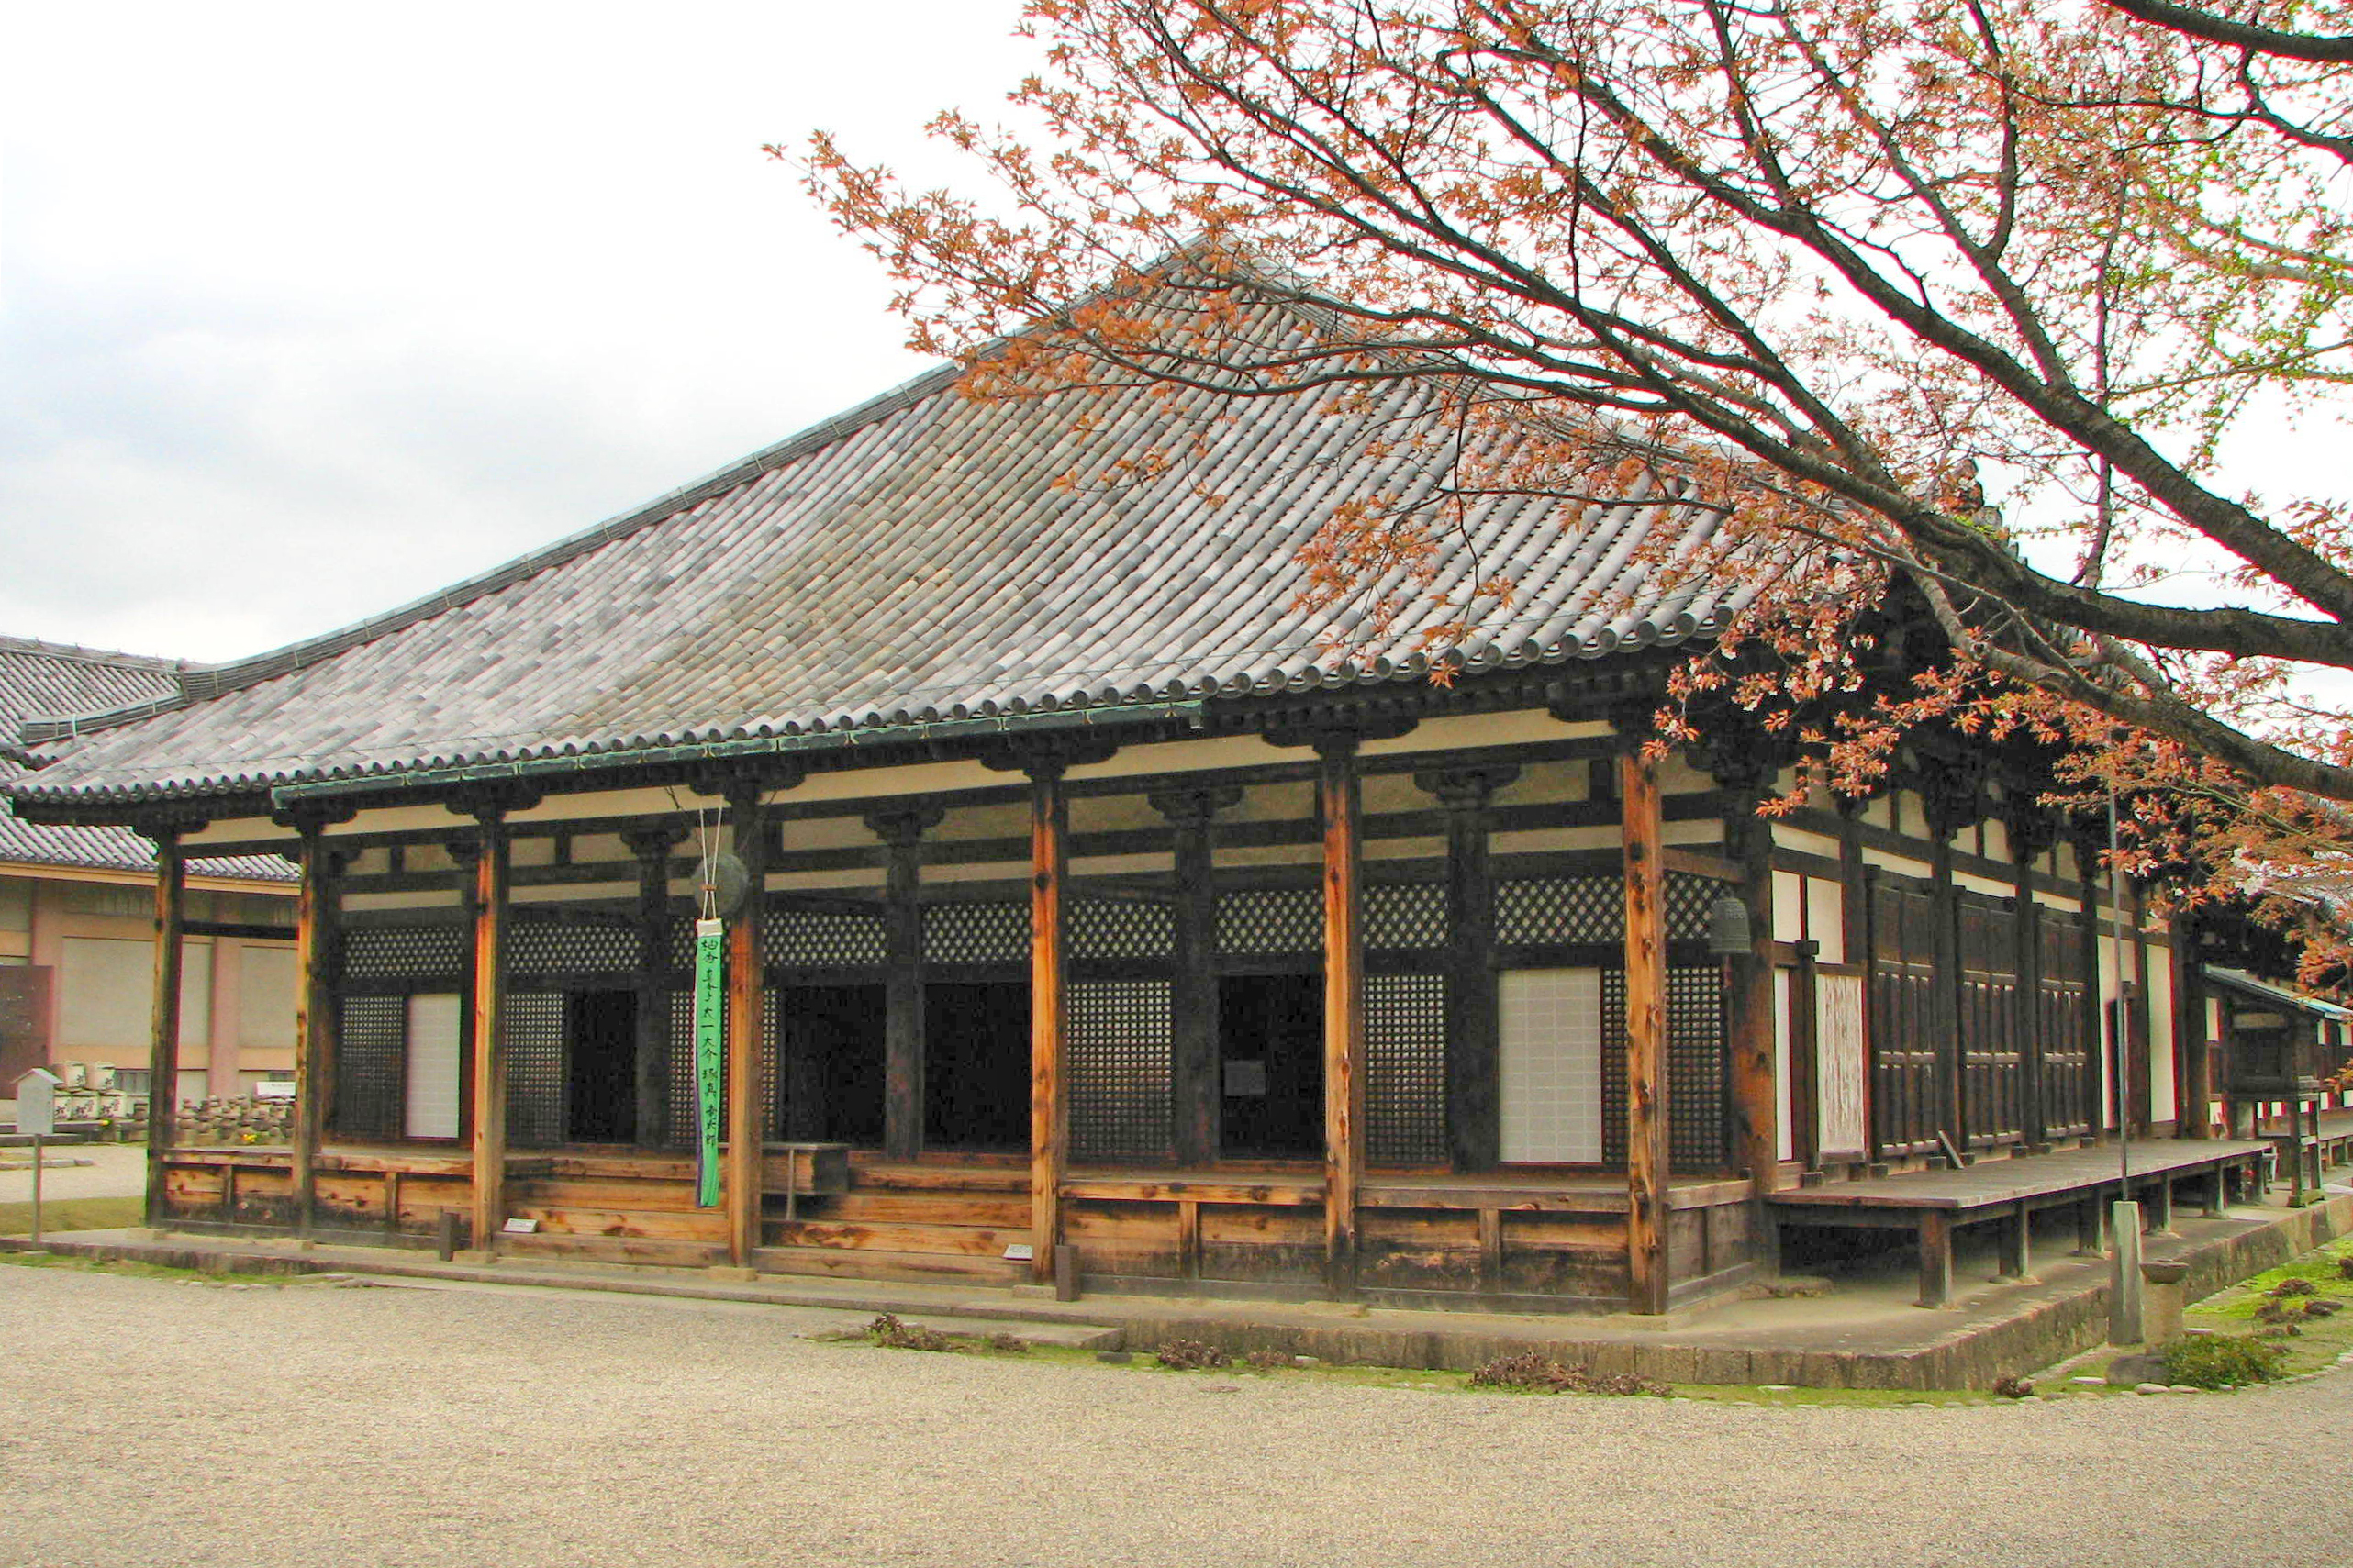 Храм Ганго-дзи. Основан в 593 году в соседней Аске, перенесен в Нару в 718 году, после переноса столицы в Хейдзе-ке.